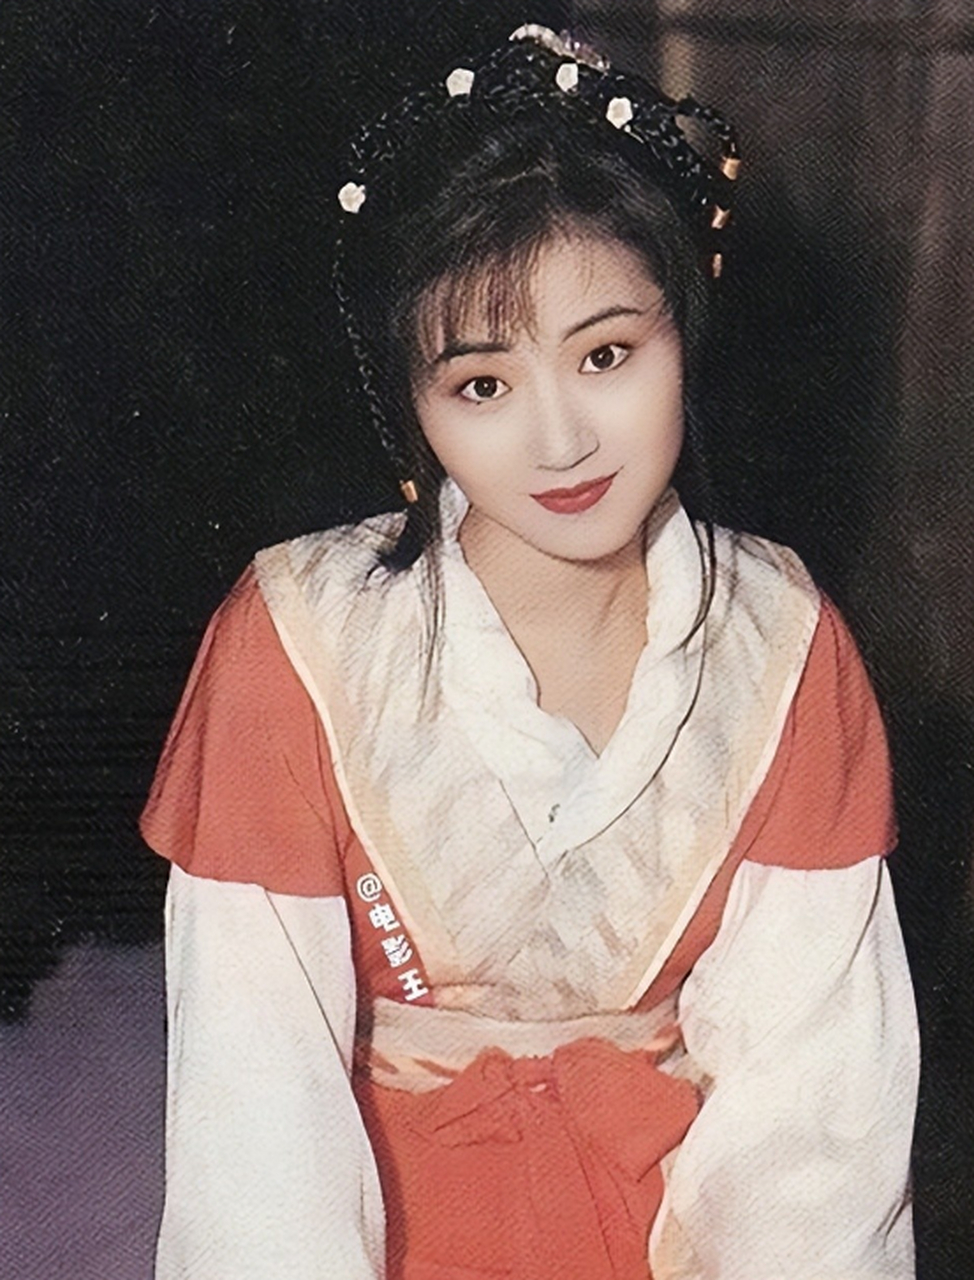 1995年,甄子丹在拍摄《精武门》时对女神万绮雯一见钟情,为了她甄子丹